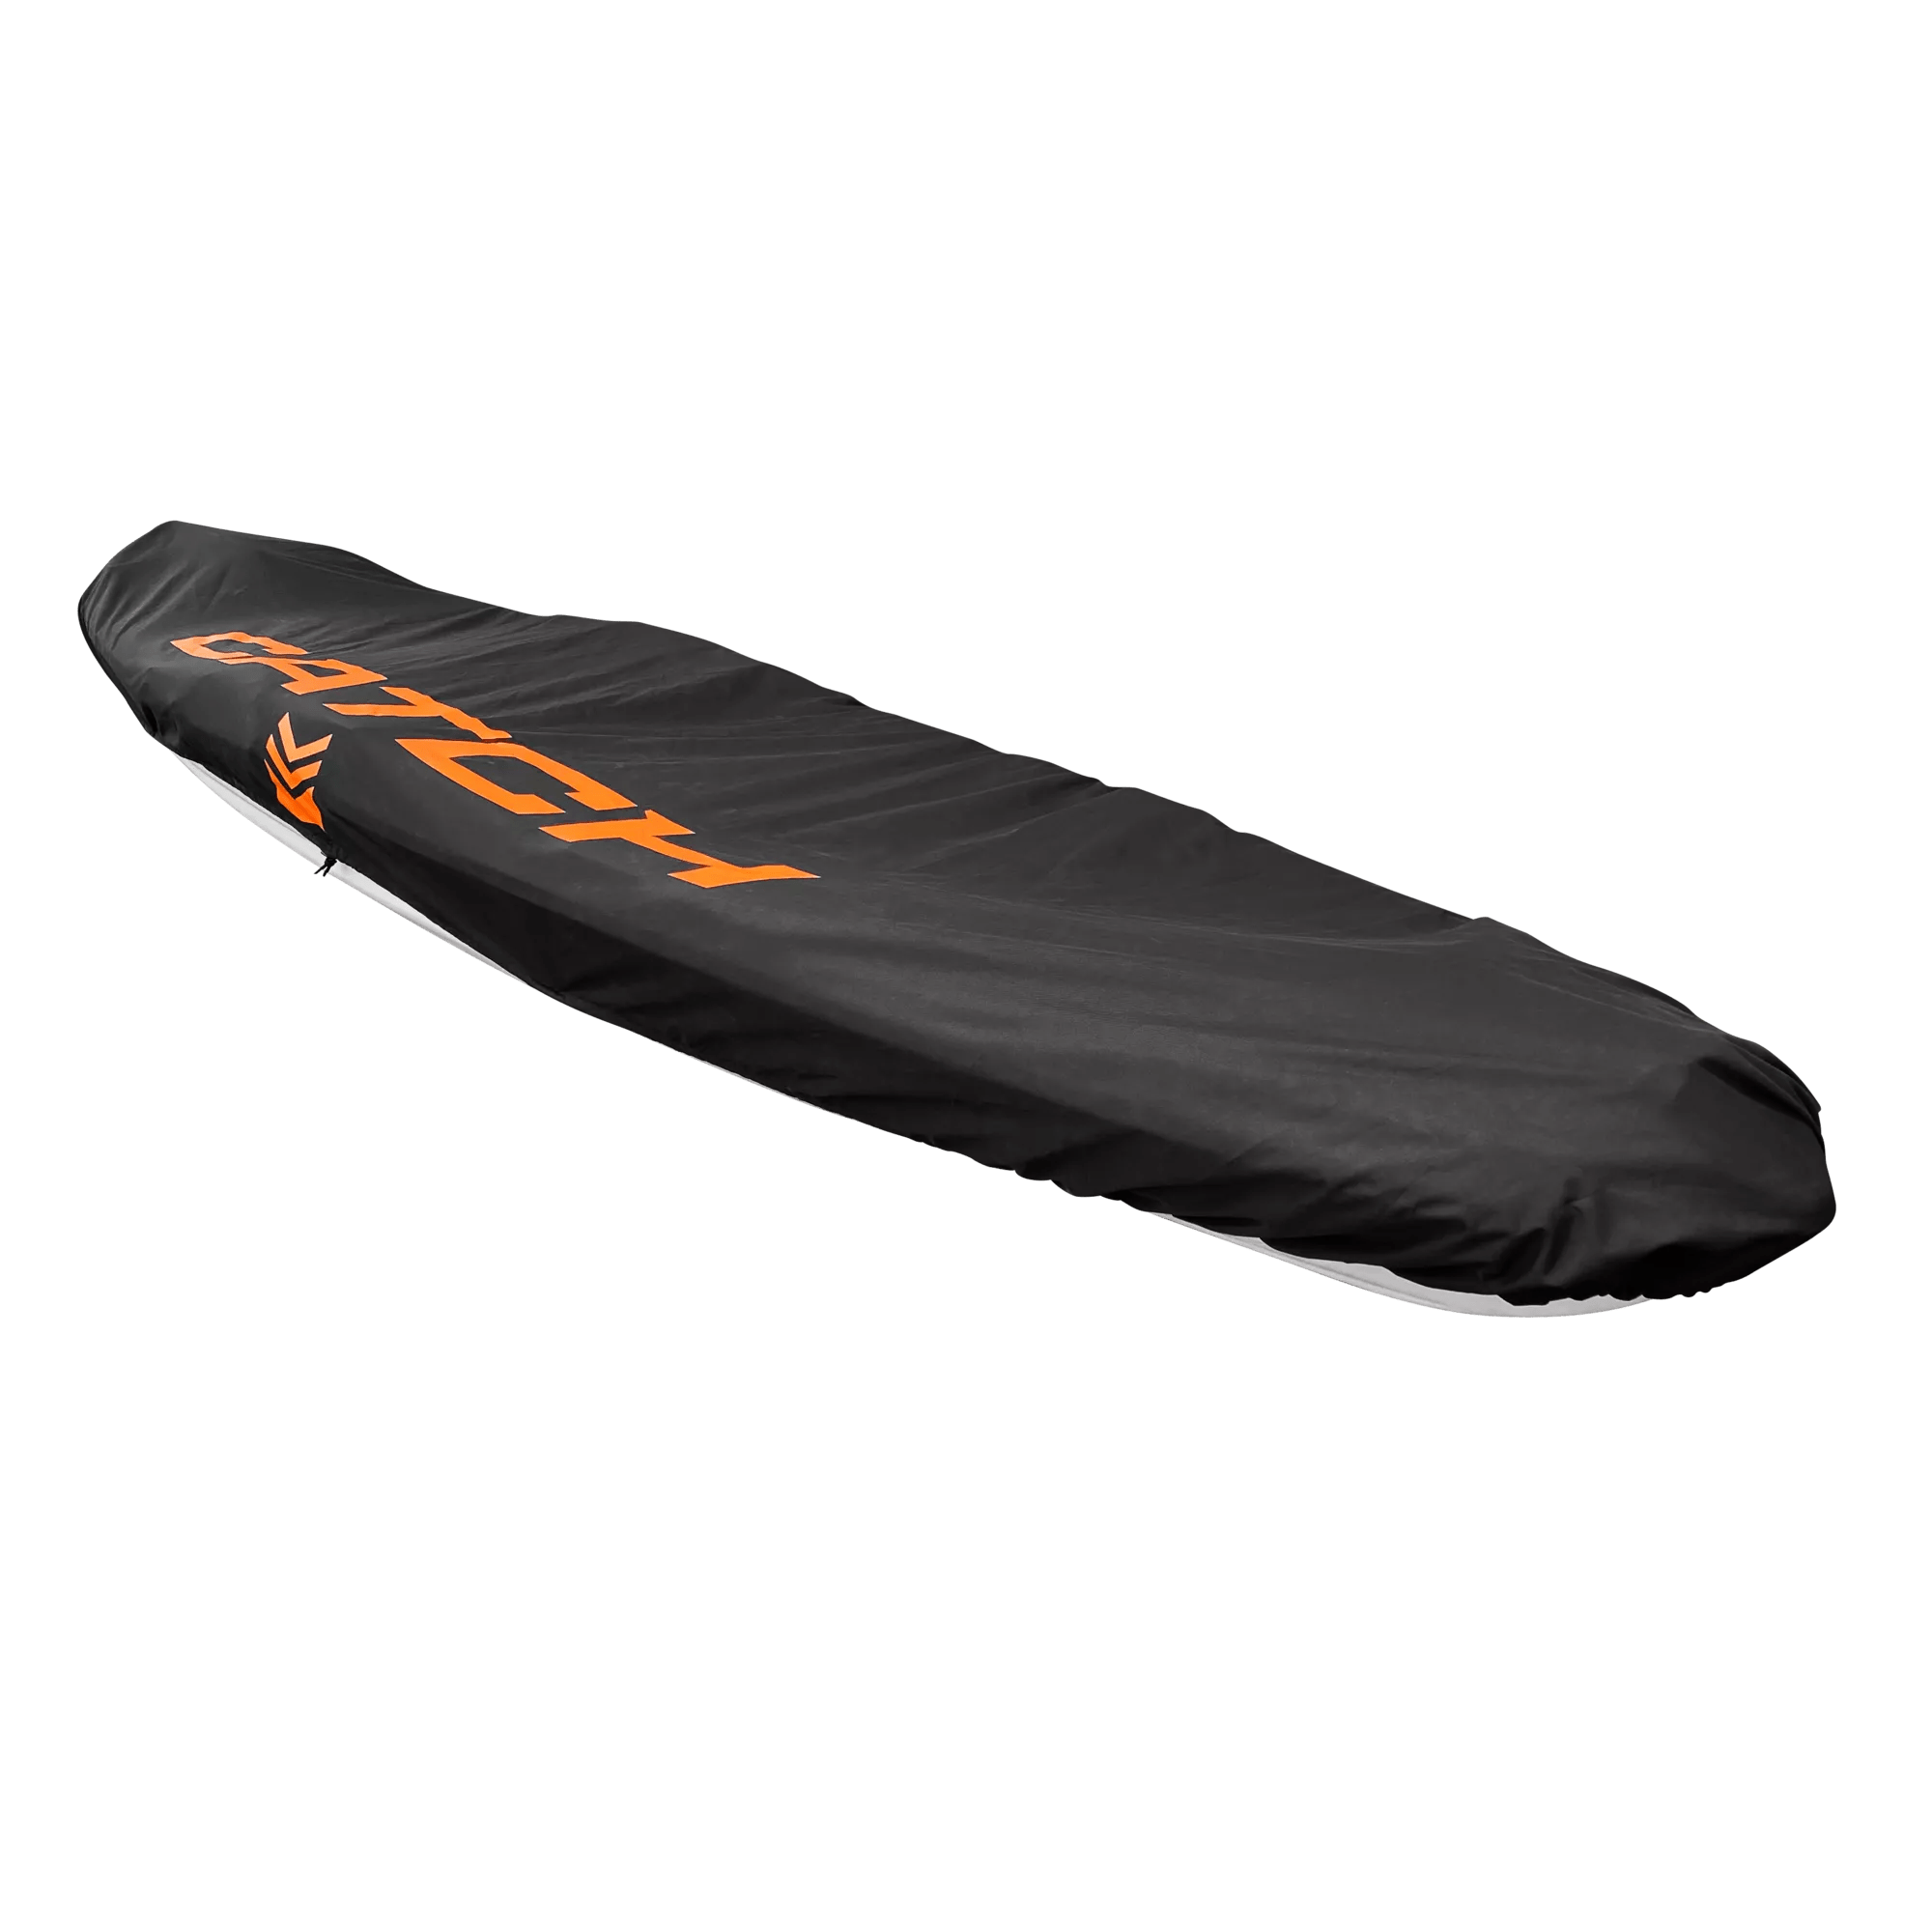 PELICAN - Housse pour kayak Catch de 335-396 cm (12 pi-13 pi) - Grey - PS3049-00 - ISO